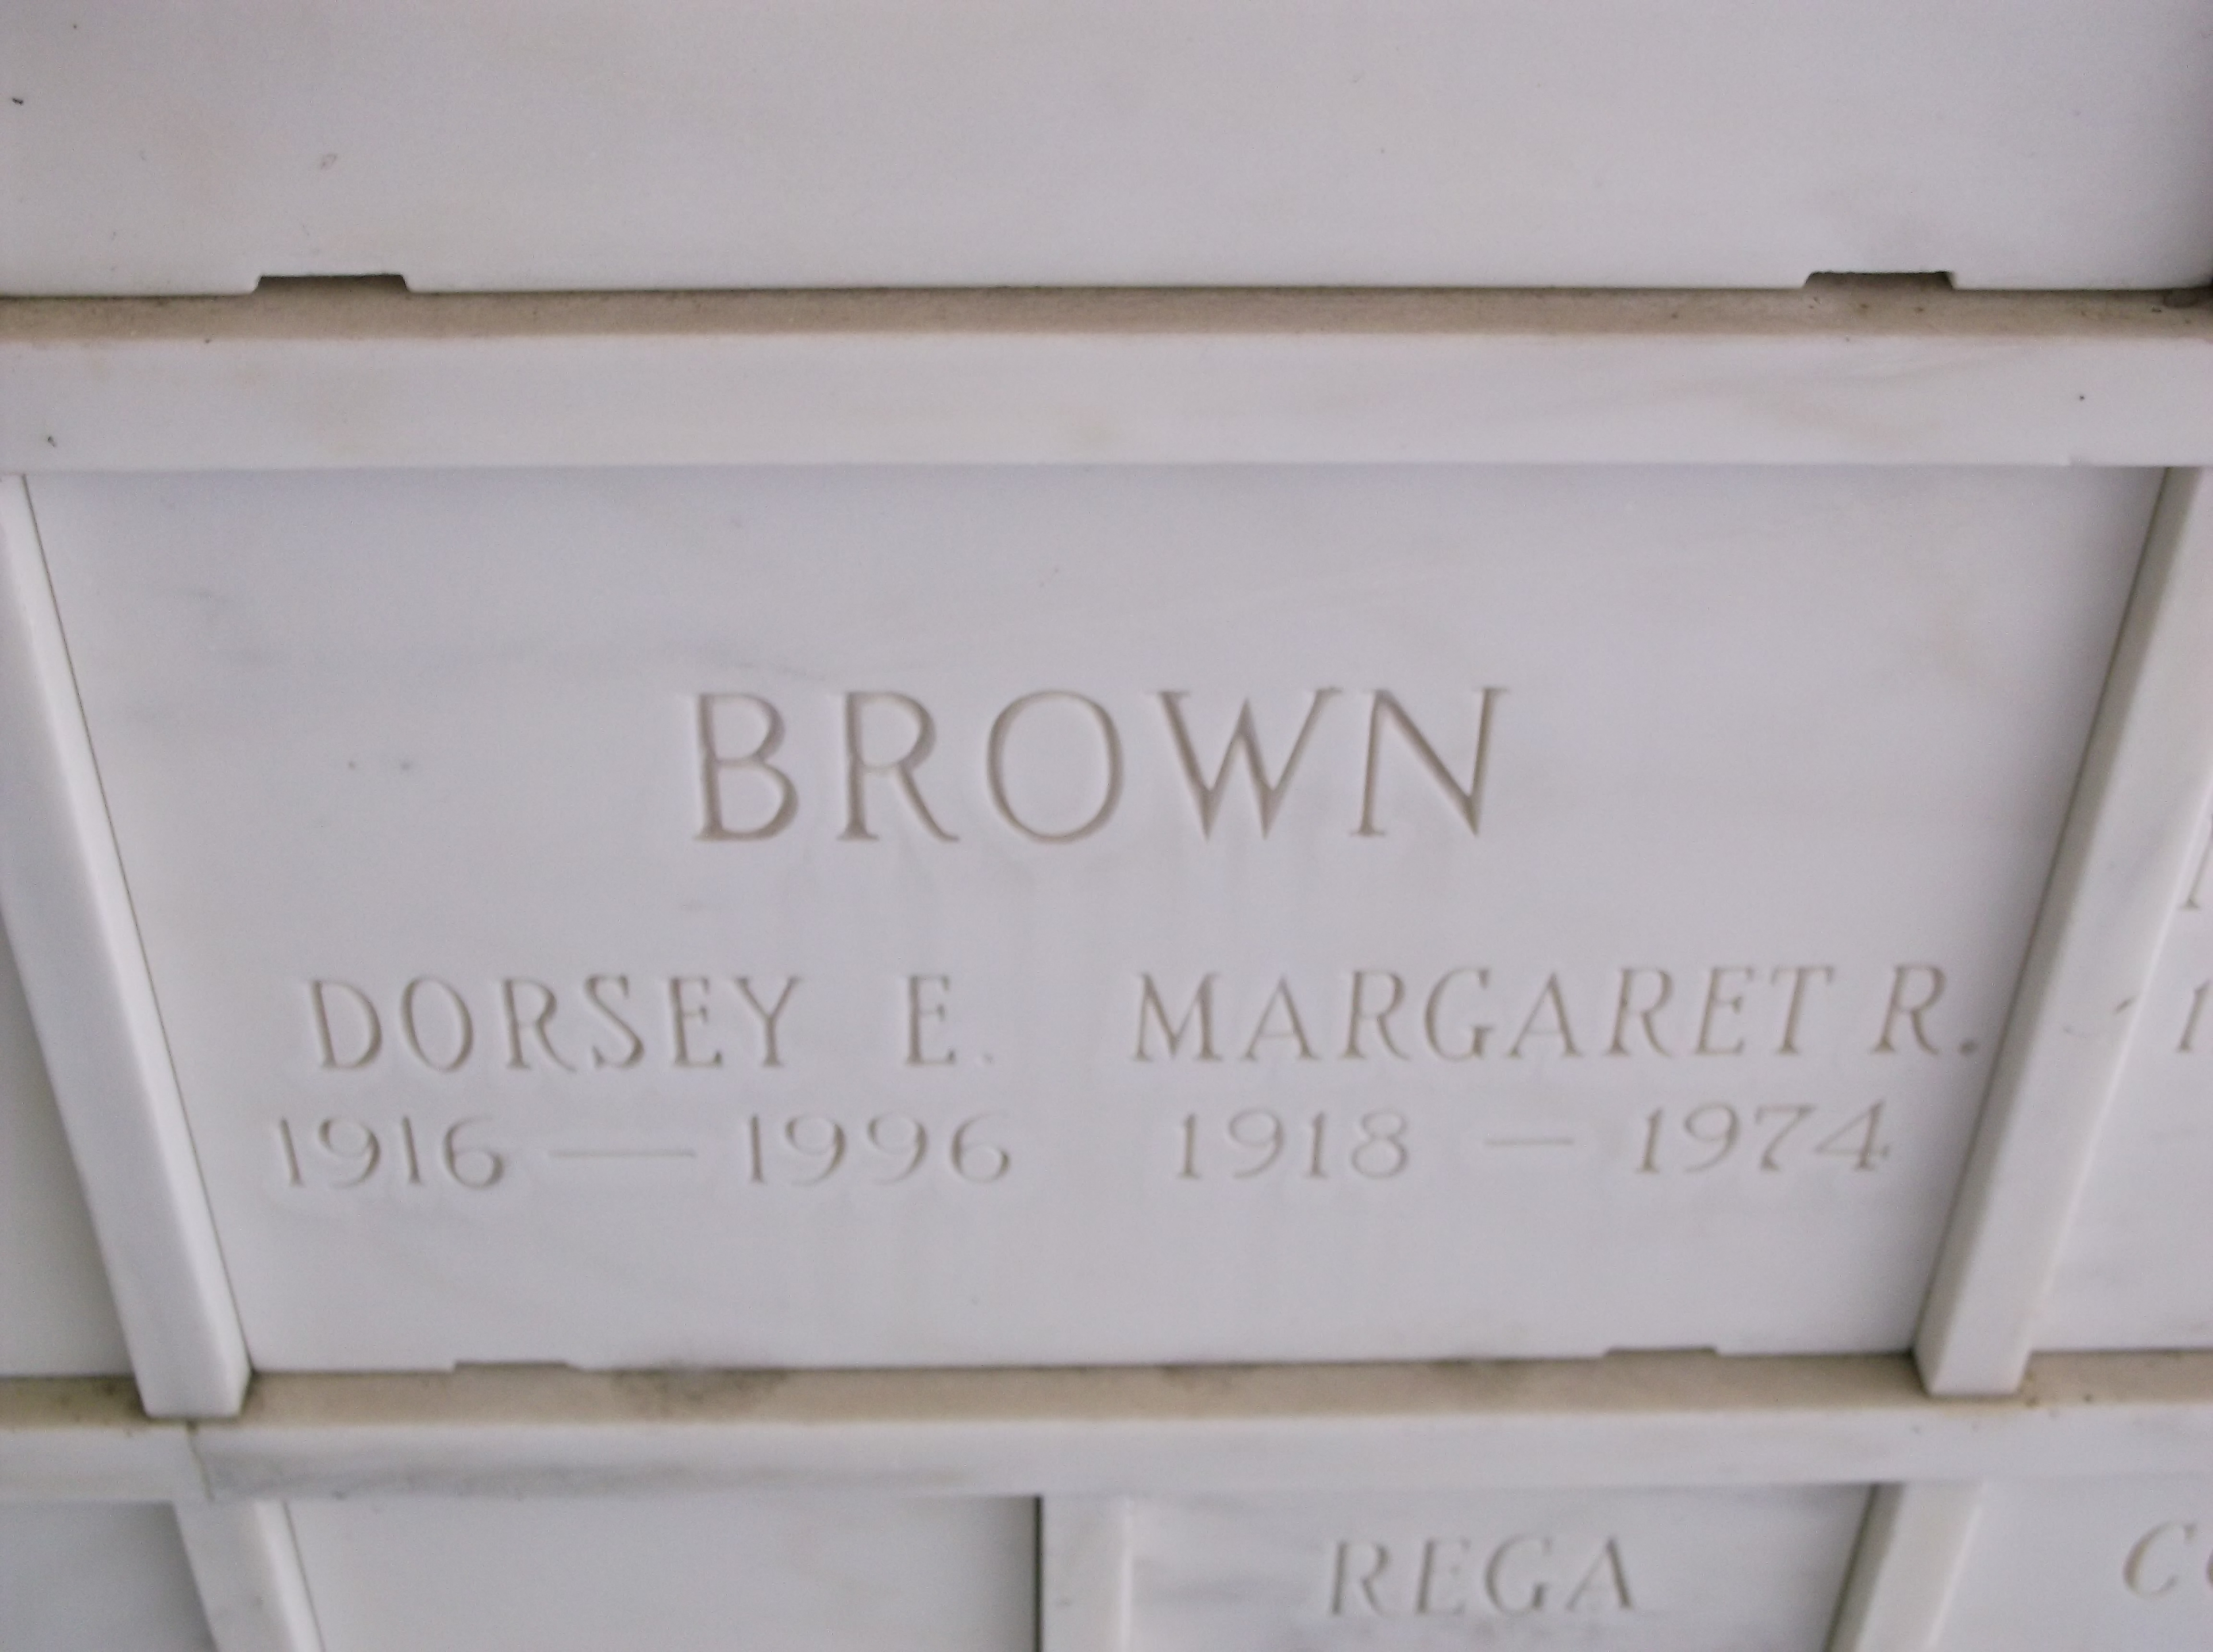 Margaret R Brown